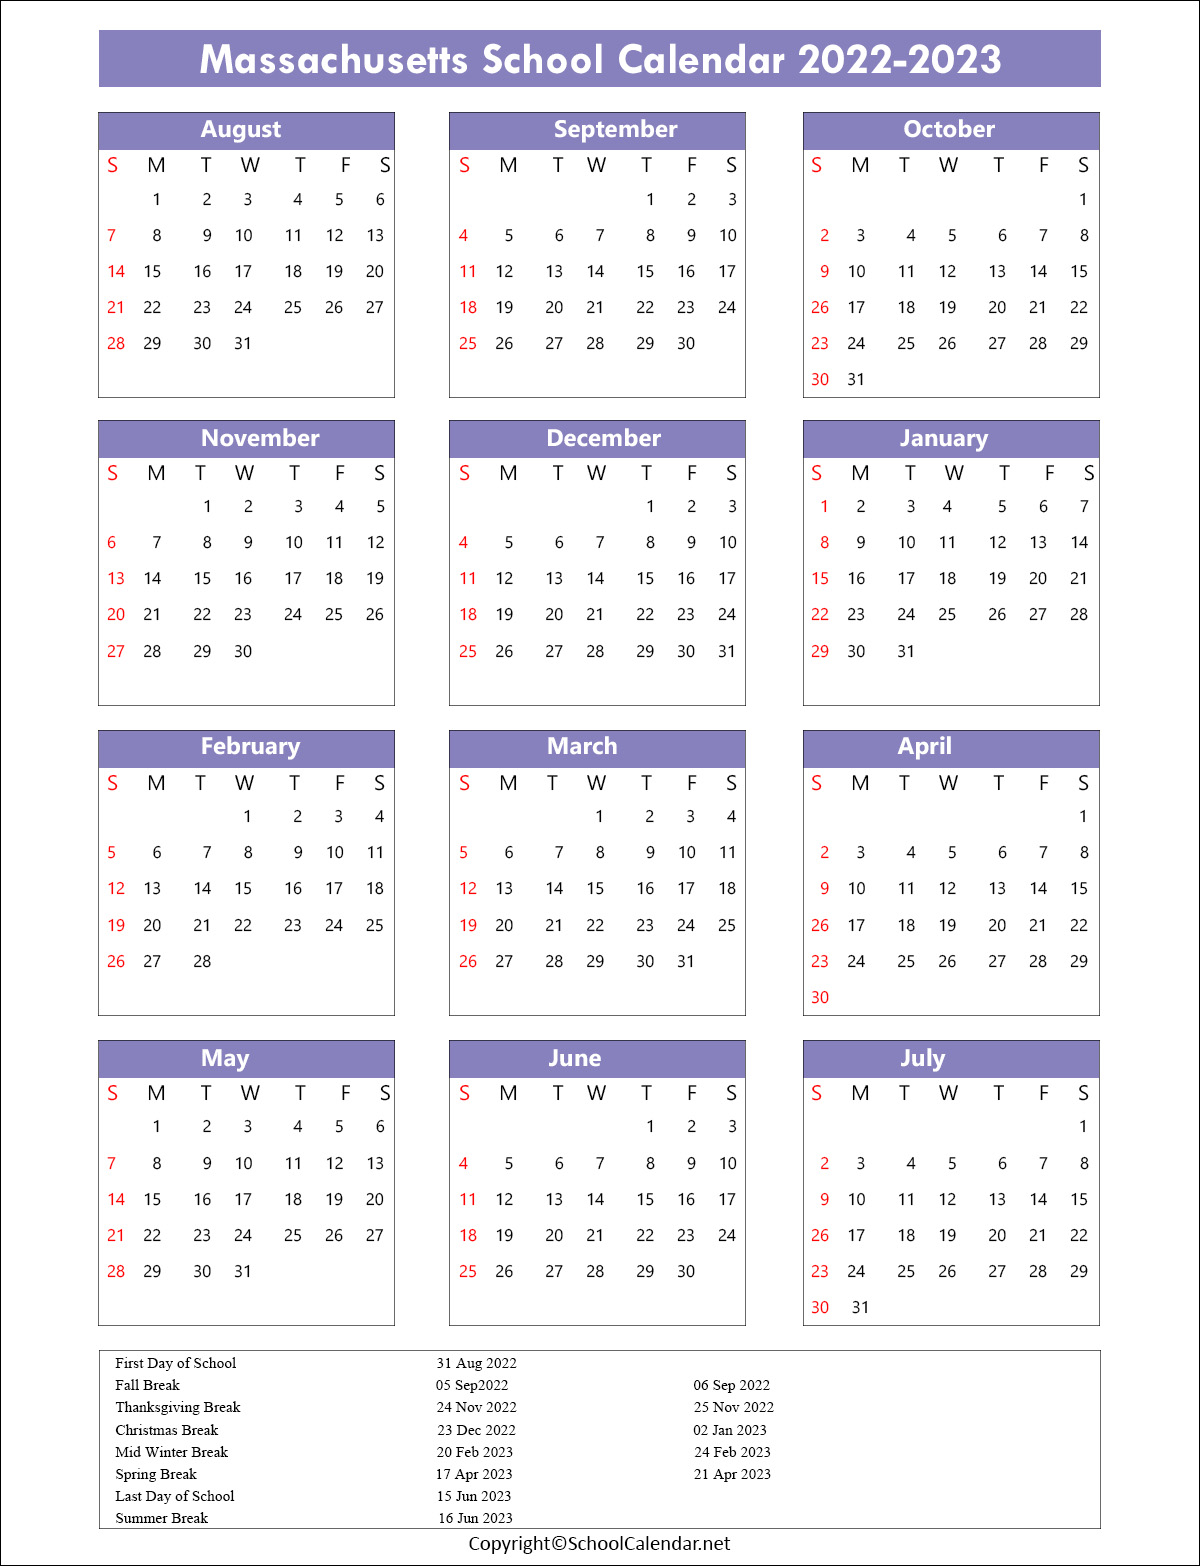 Massachusetts School Calendar 2022